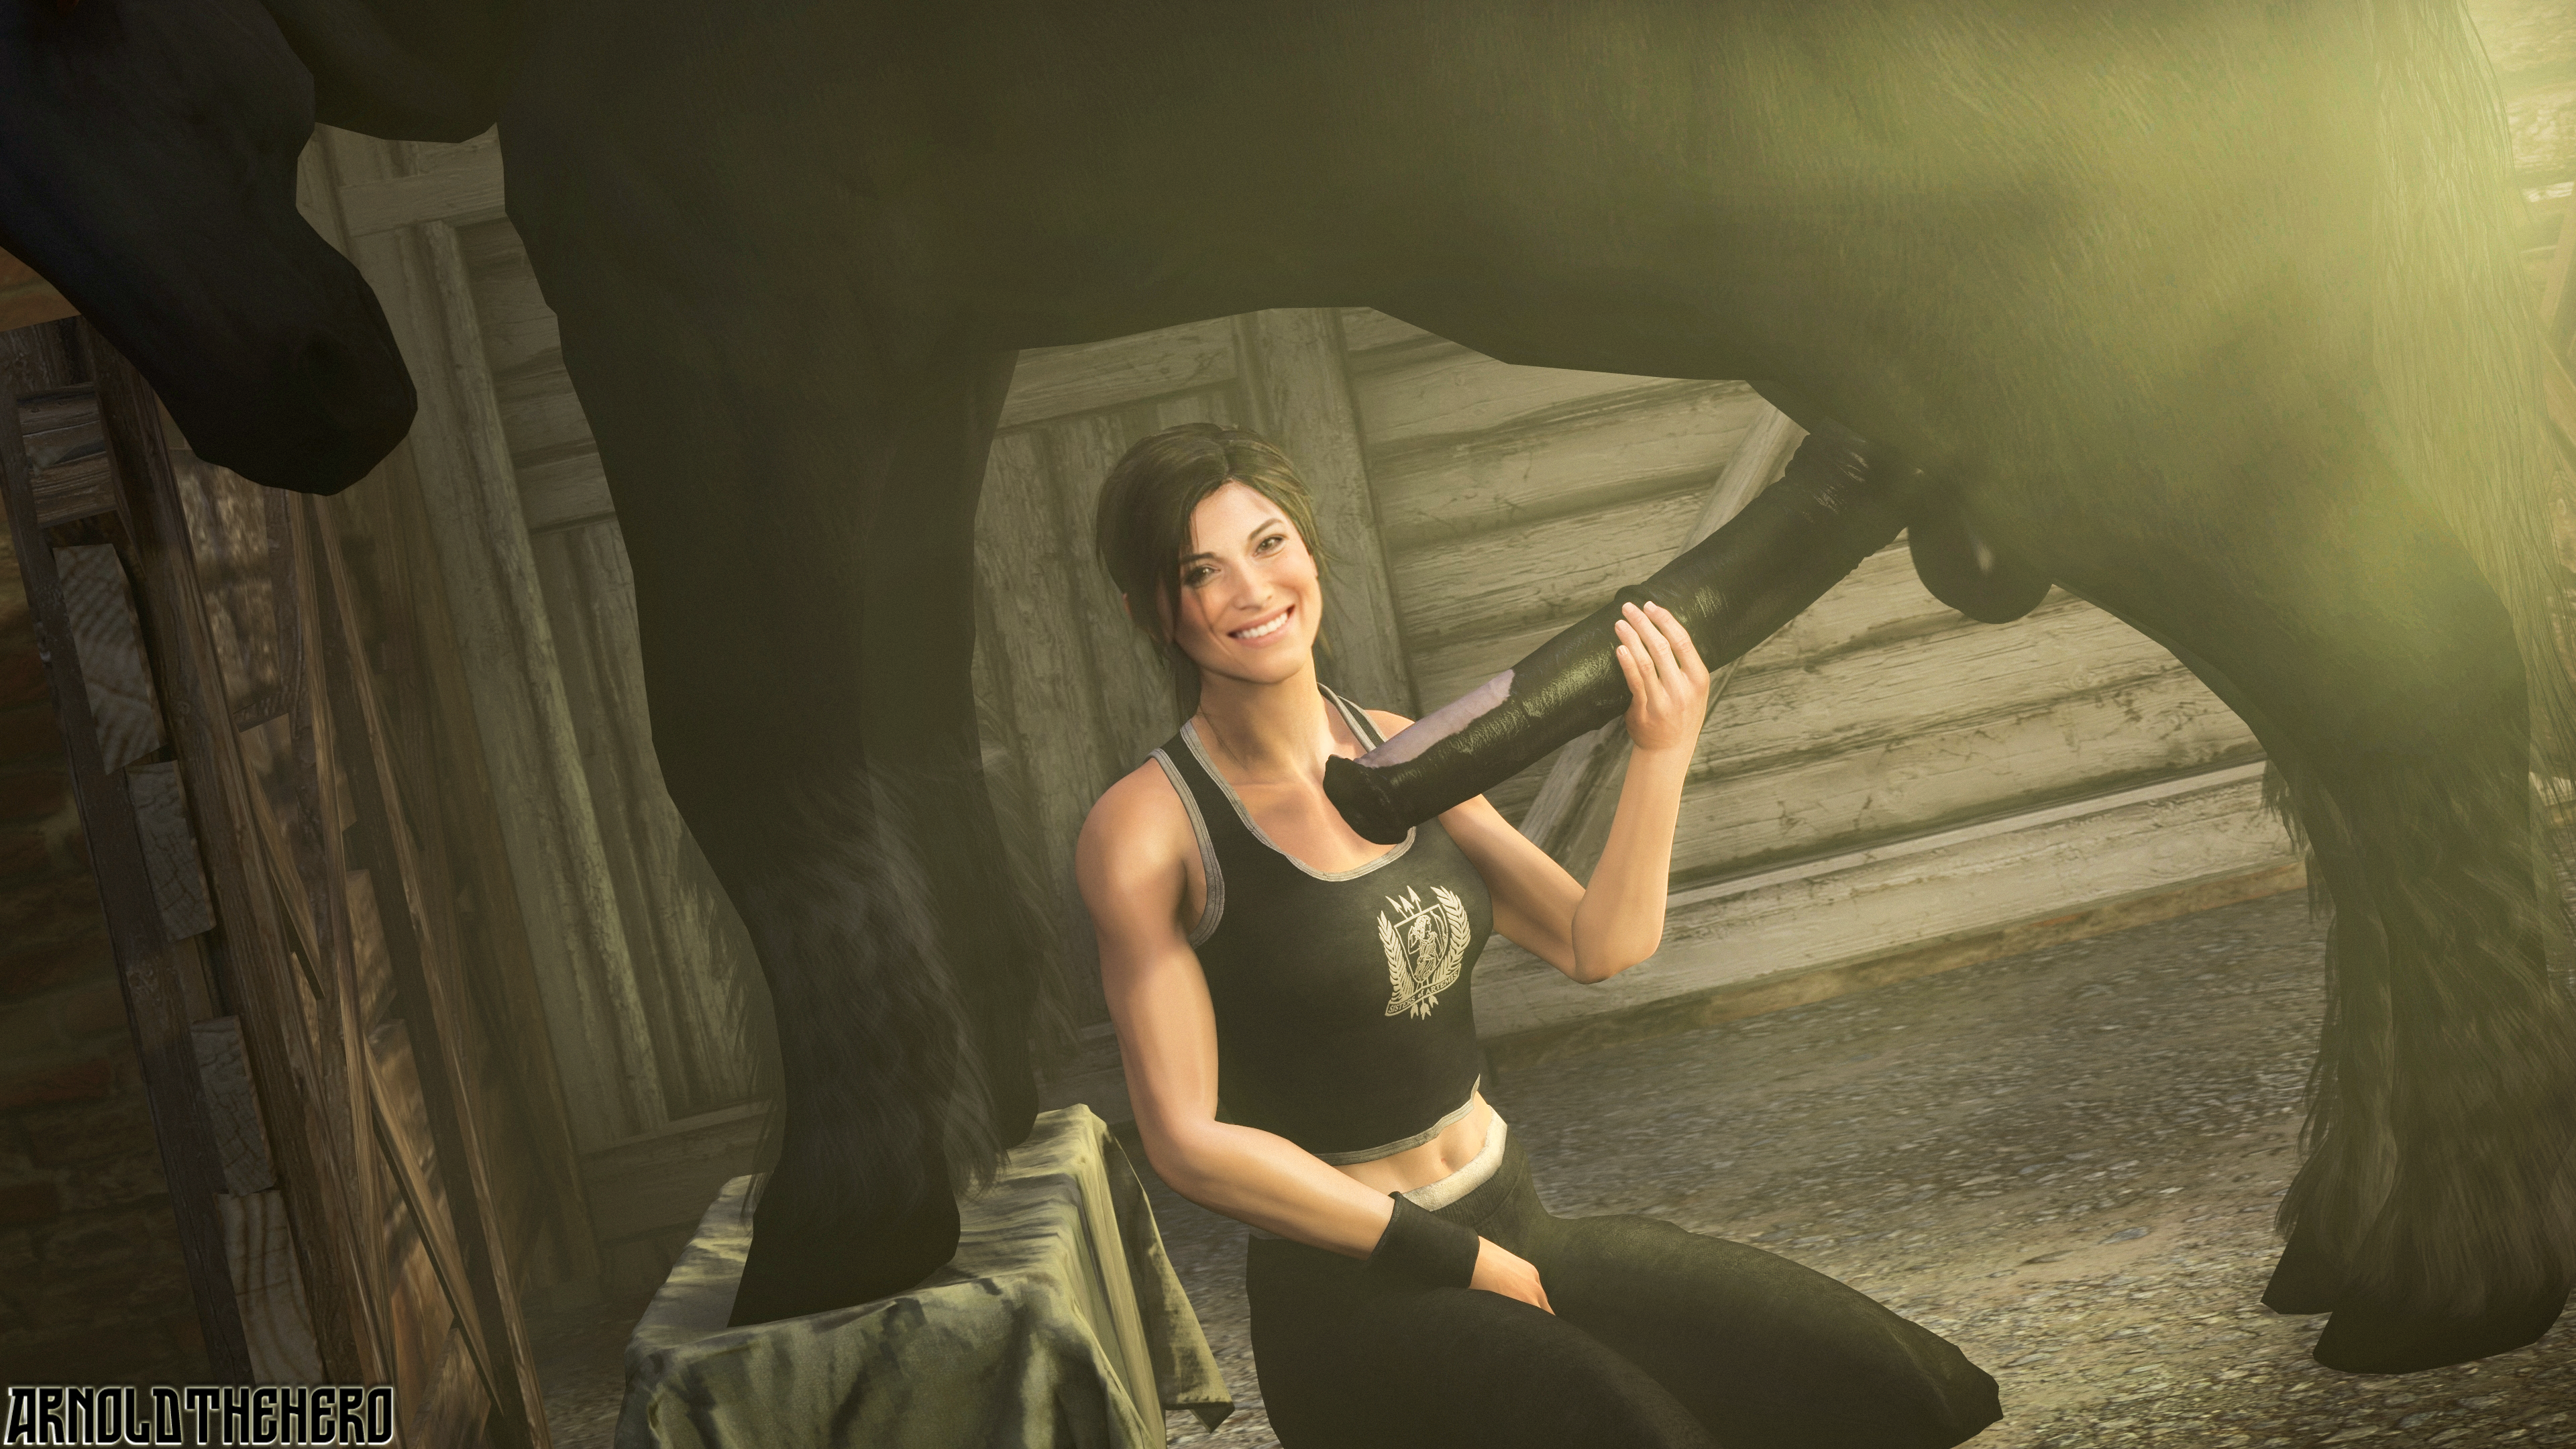 Lara with the horse порно фото 111